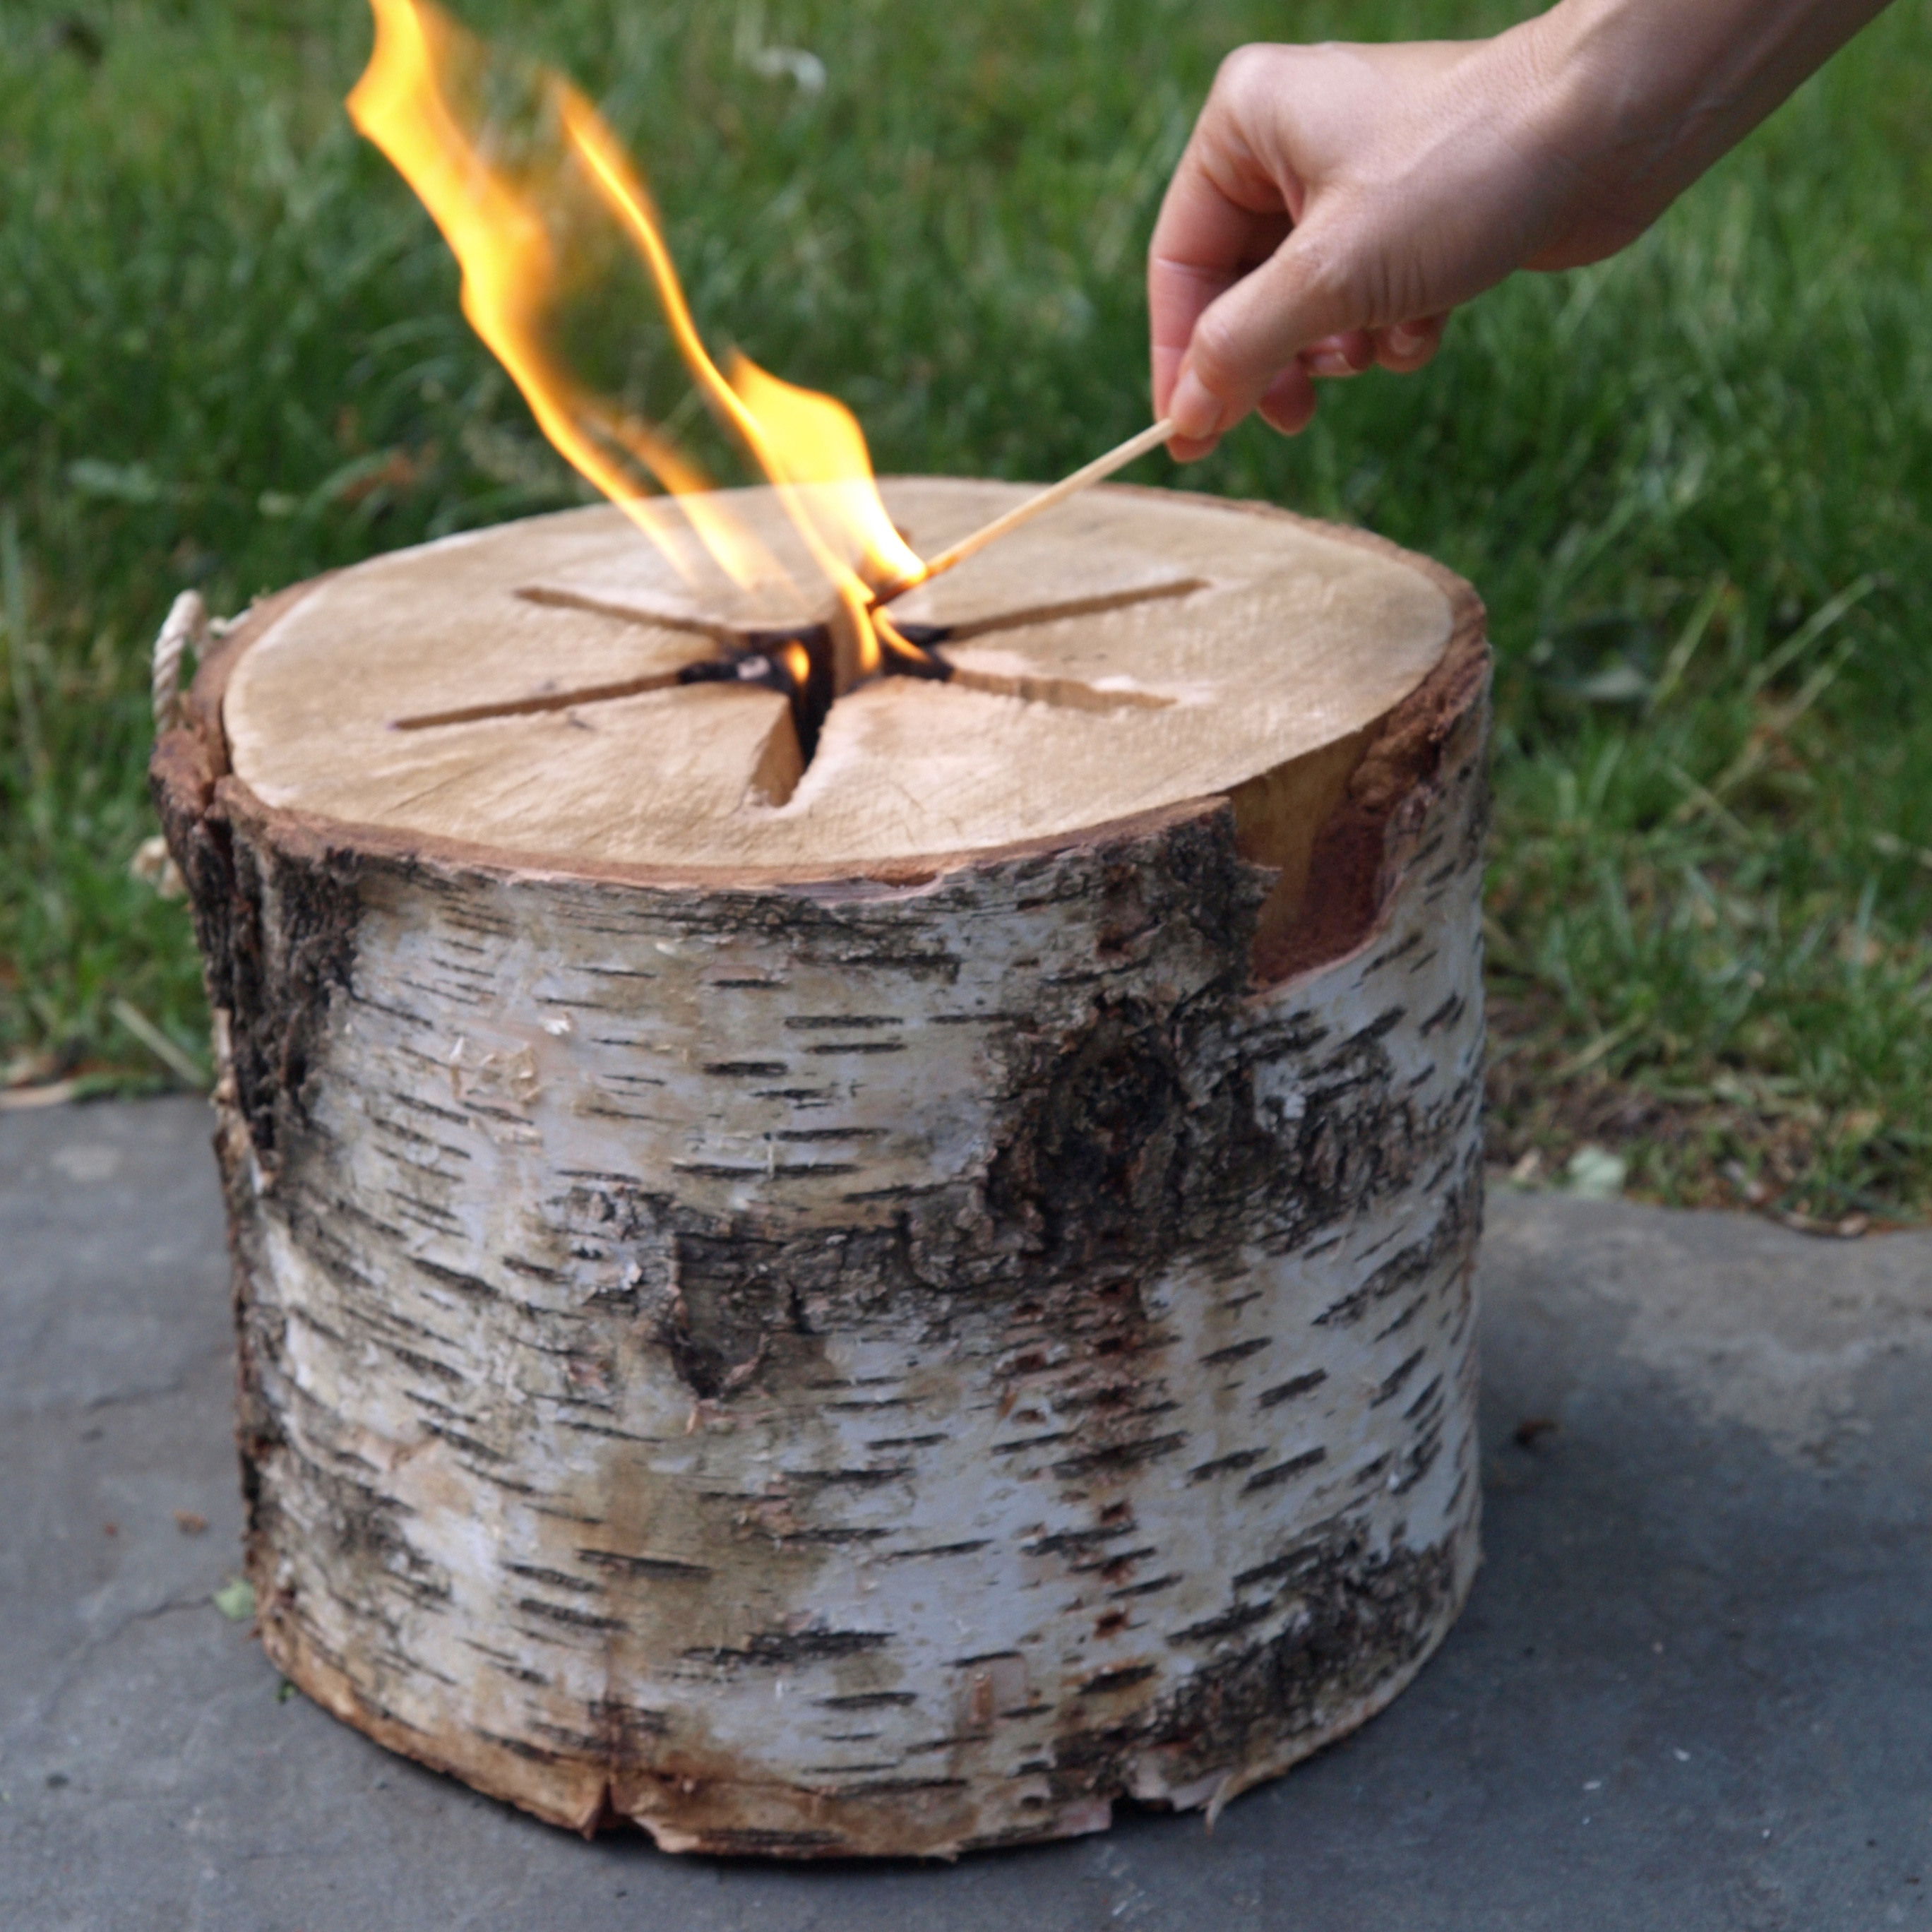 Light n Go 223145 Firewood, 1.5 hr Burn Time